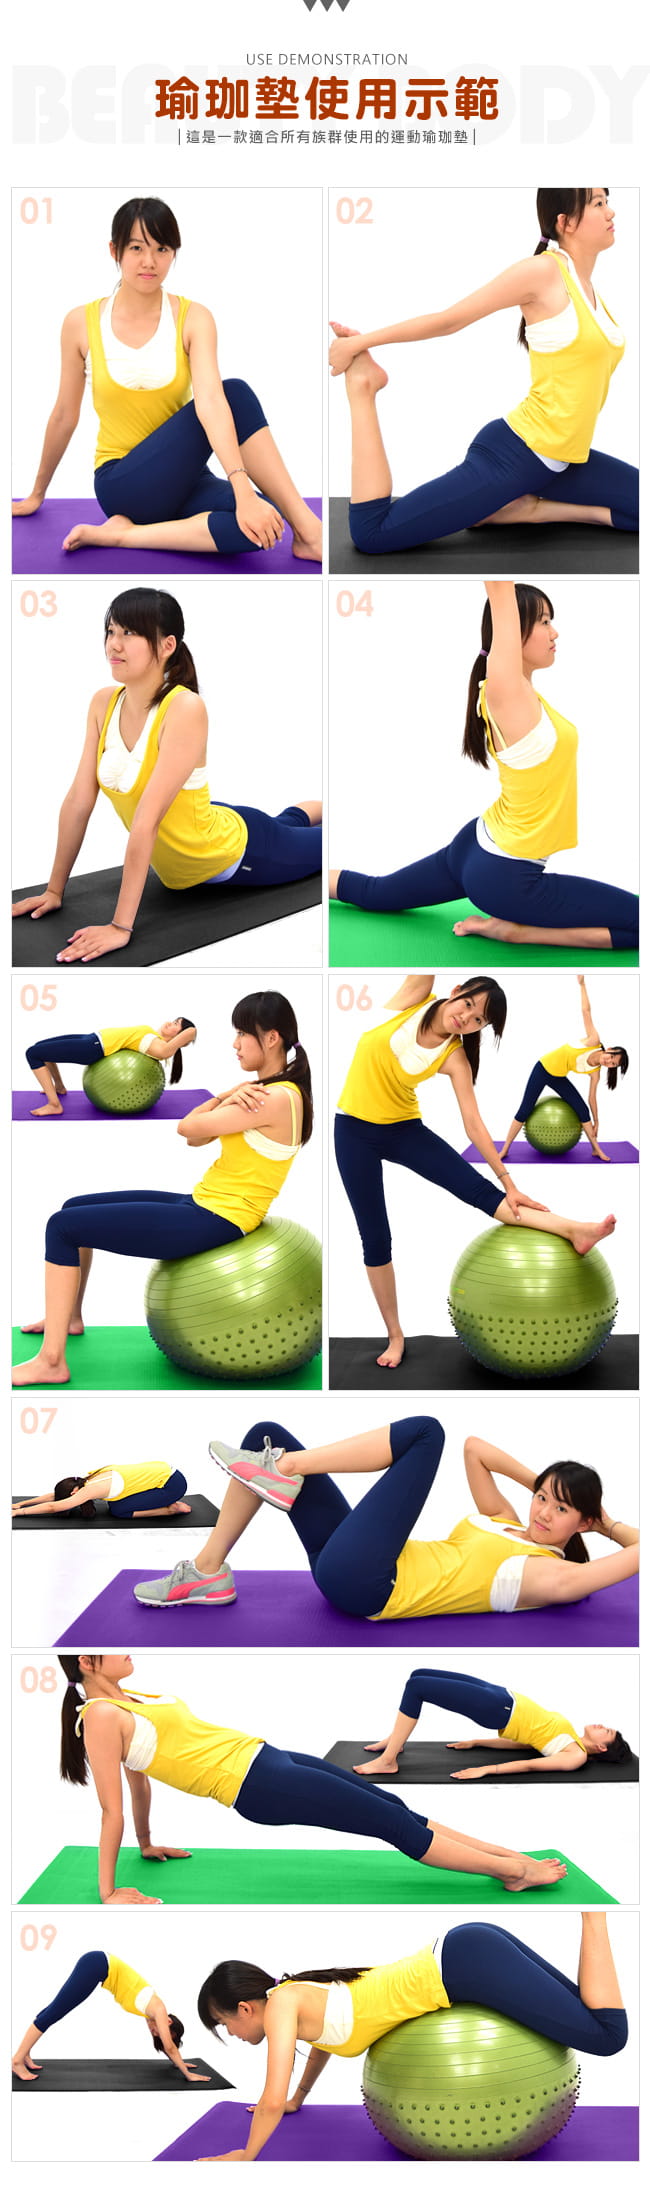 健身6MM瑜珈墊 (PVC運動墊遊戲墊/訓練止滑墊防滑墊/寶寶爬行墊軟墊/睡墊野餐墊地墊子) 3